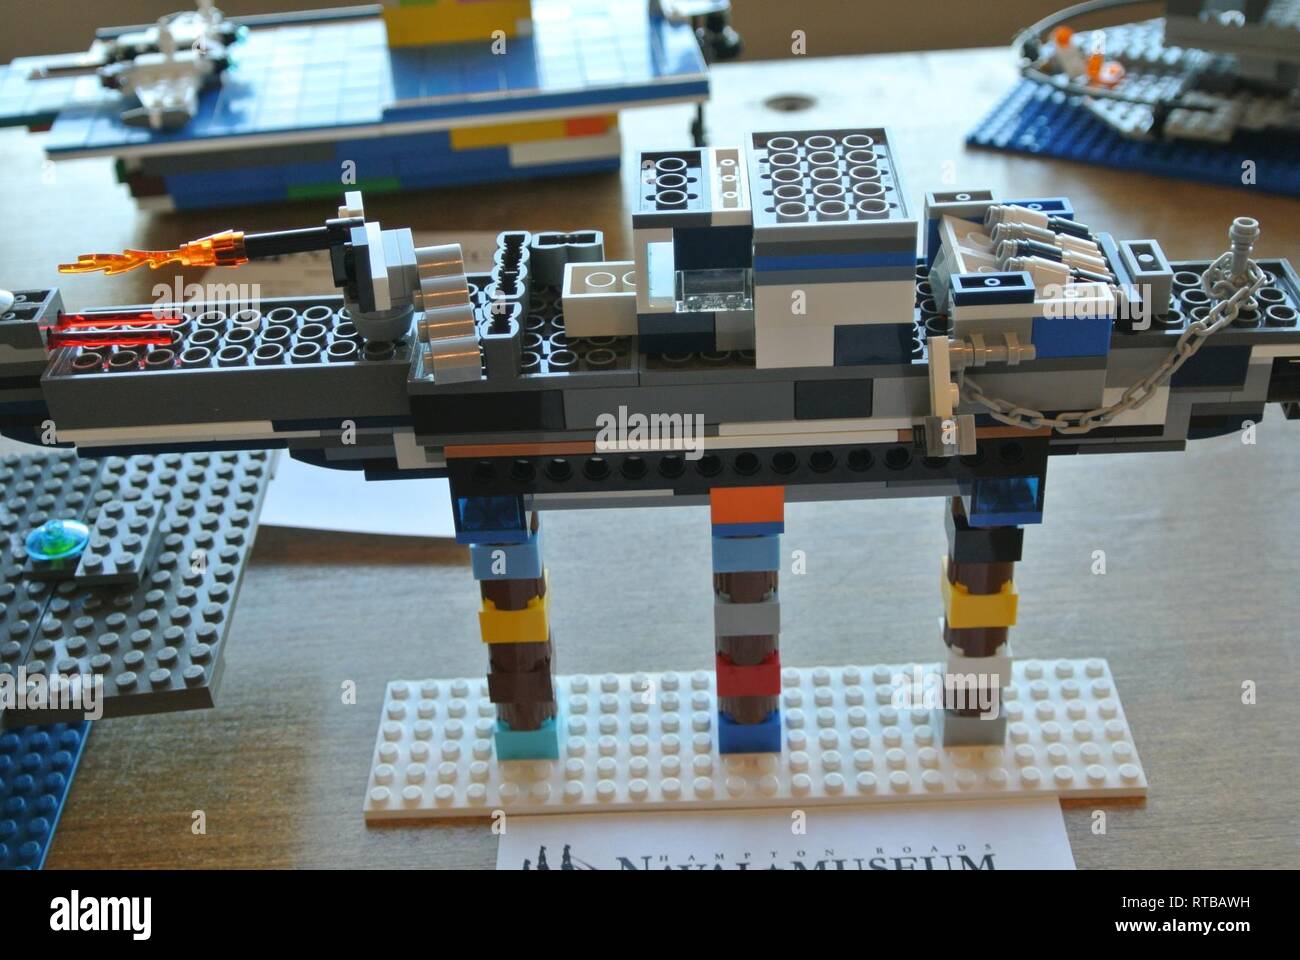 En la imagen aparecen algunas de las entradas en el hecho en casa de  ladrillos LEGO concurso modelo introducido durante la Octava Ceremonia  Anual de ladrillo por ladrillo LEGO EVENTO NAVAL en